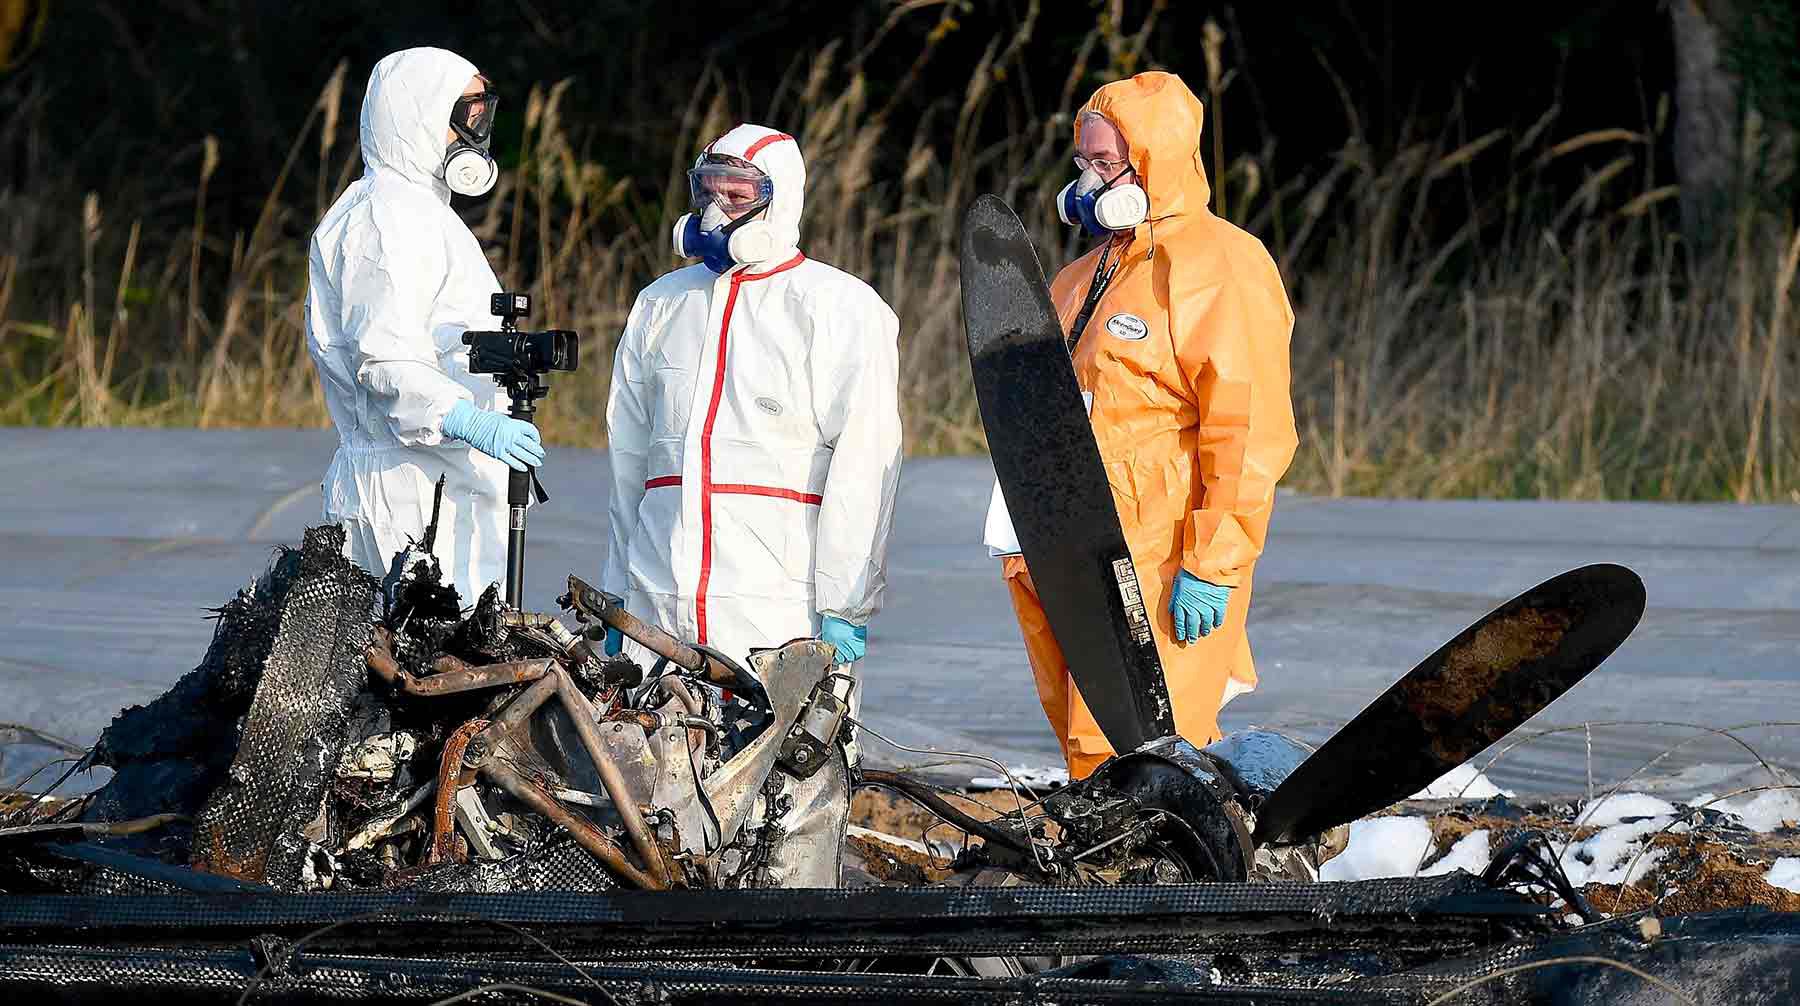 Dailystorm - Причина гибели совладелицы S7 в авиакатастрофе в Германии может остаться неизвестной